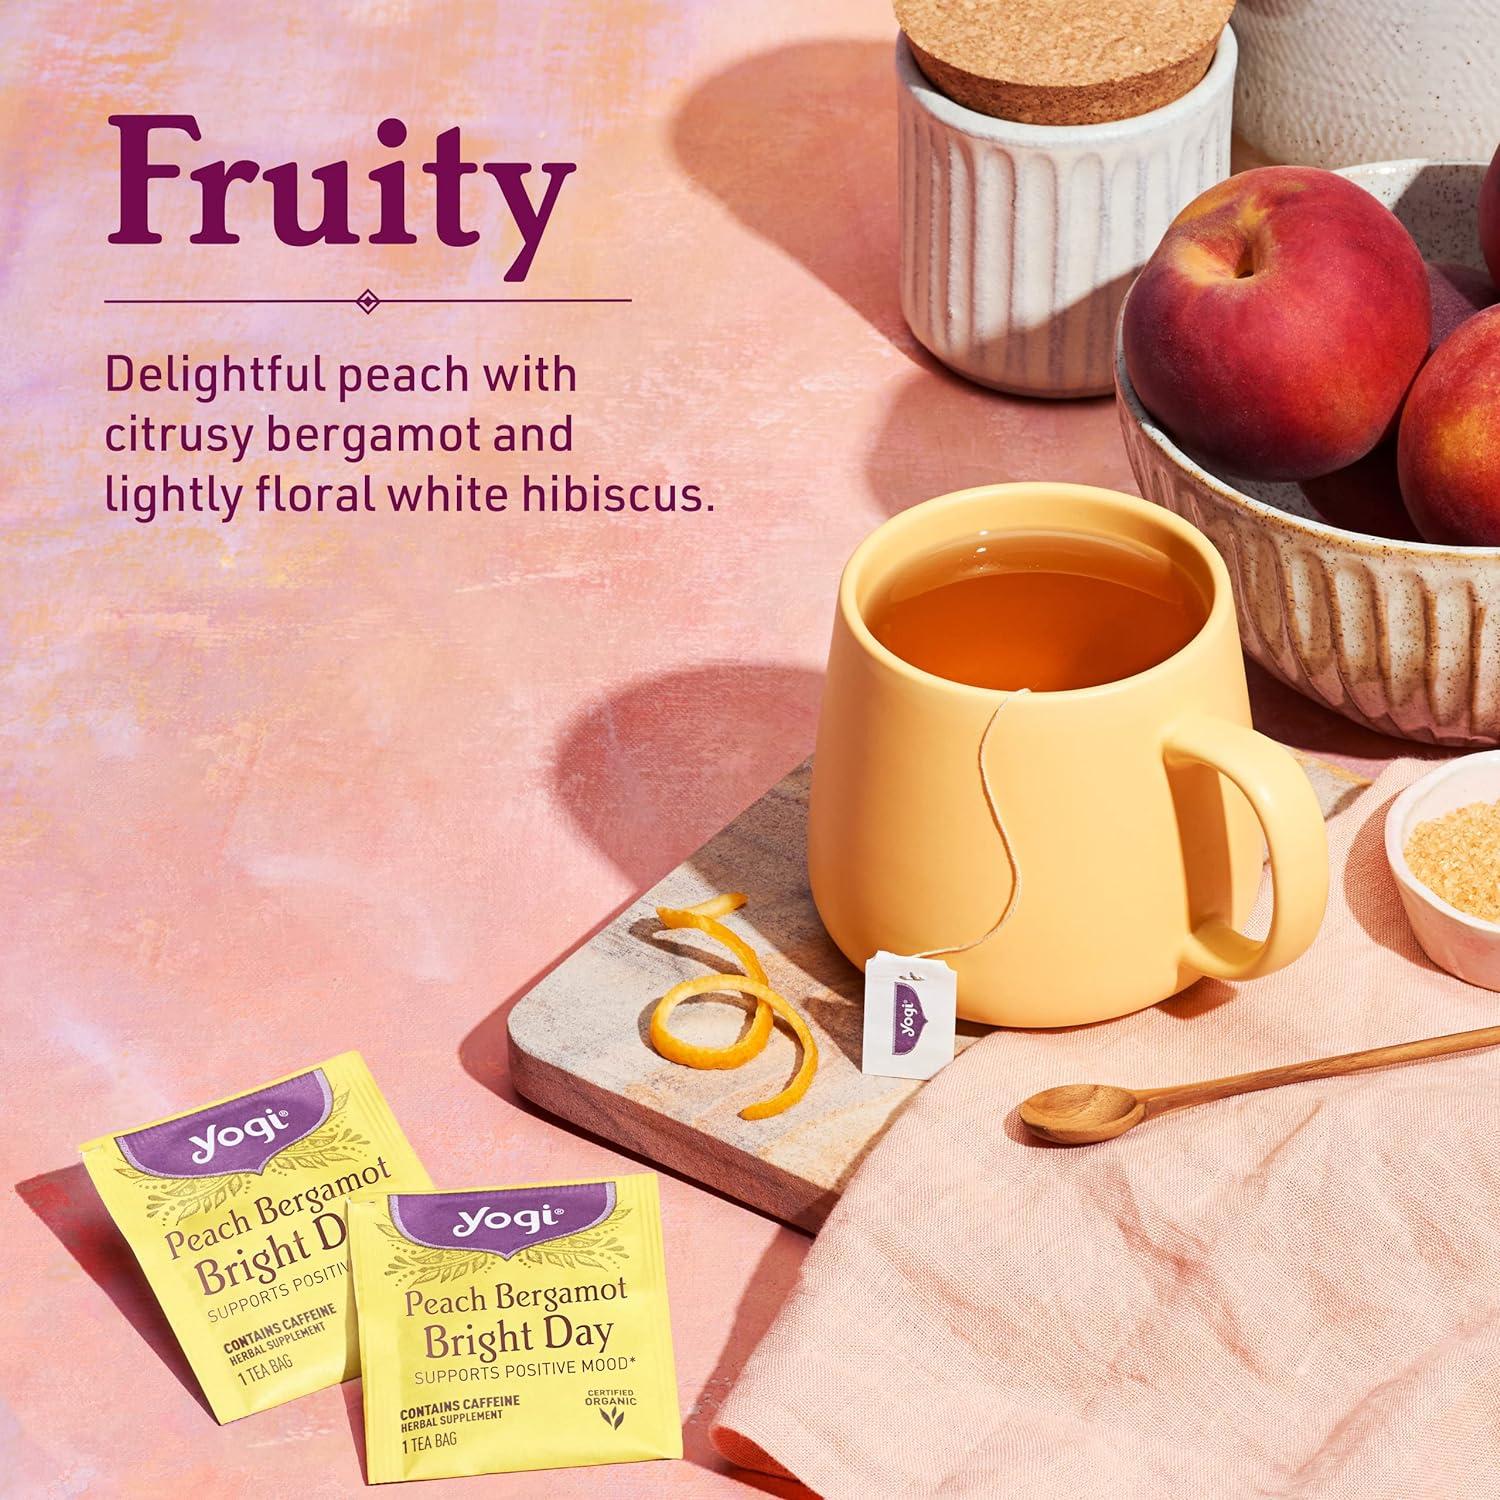 Peach Cinnamon Flavor Oolong Tea - Peach Herbal 25 Tea Bags